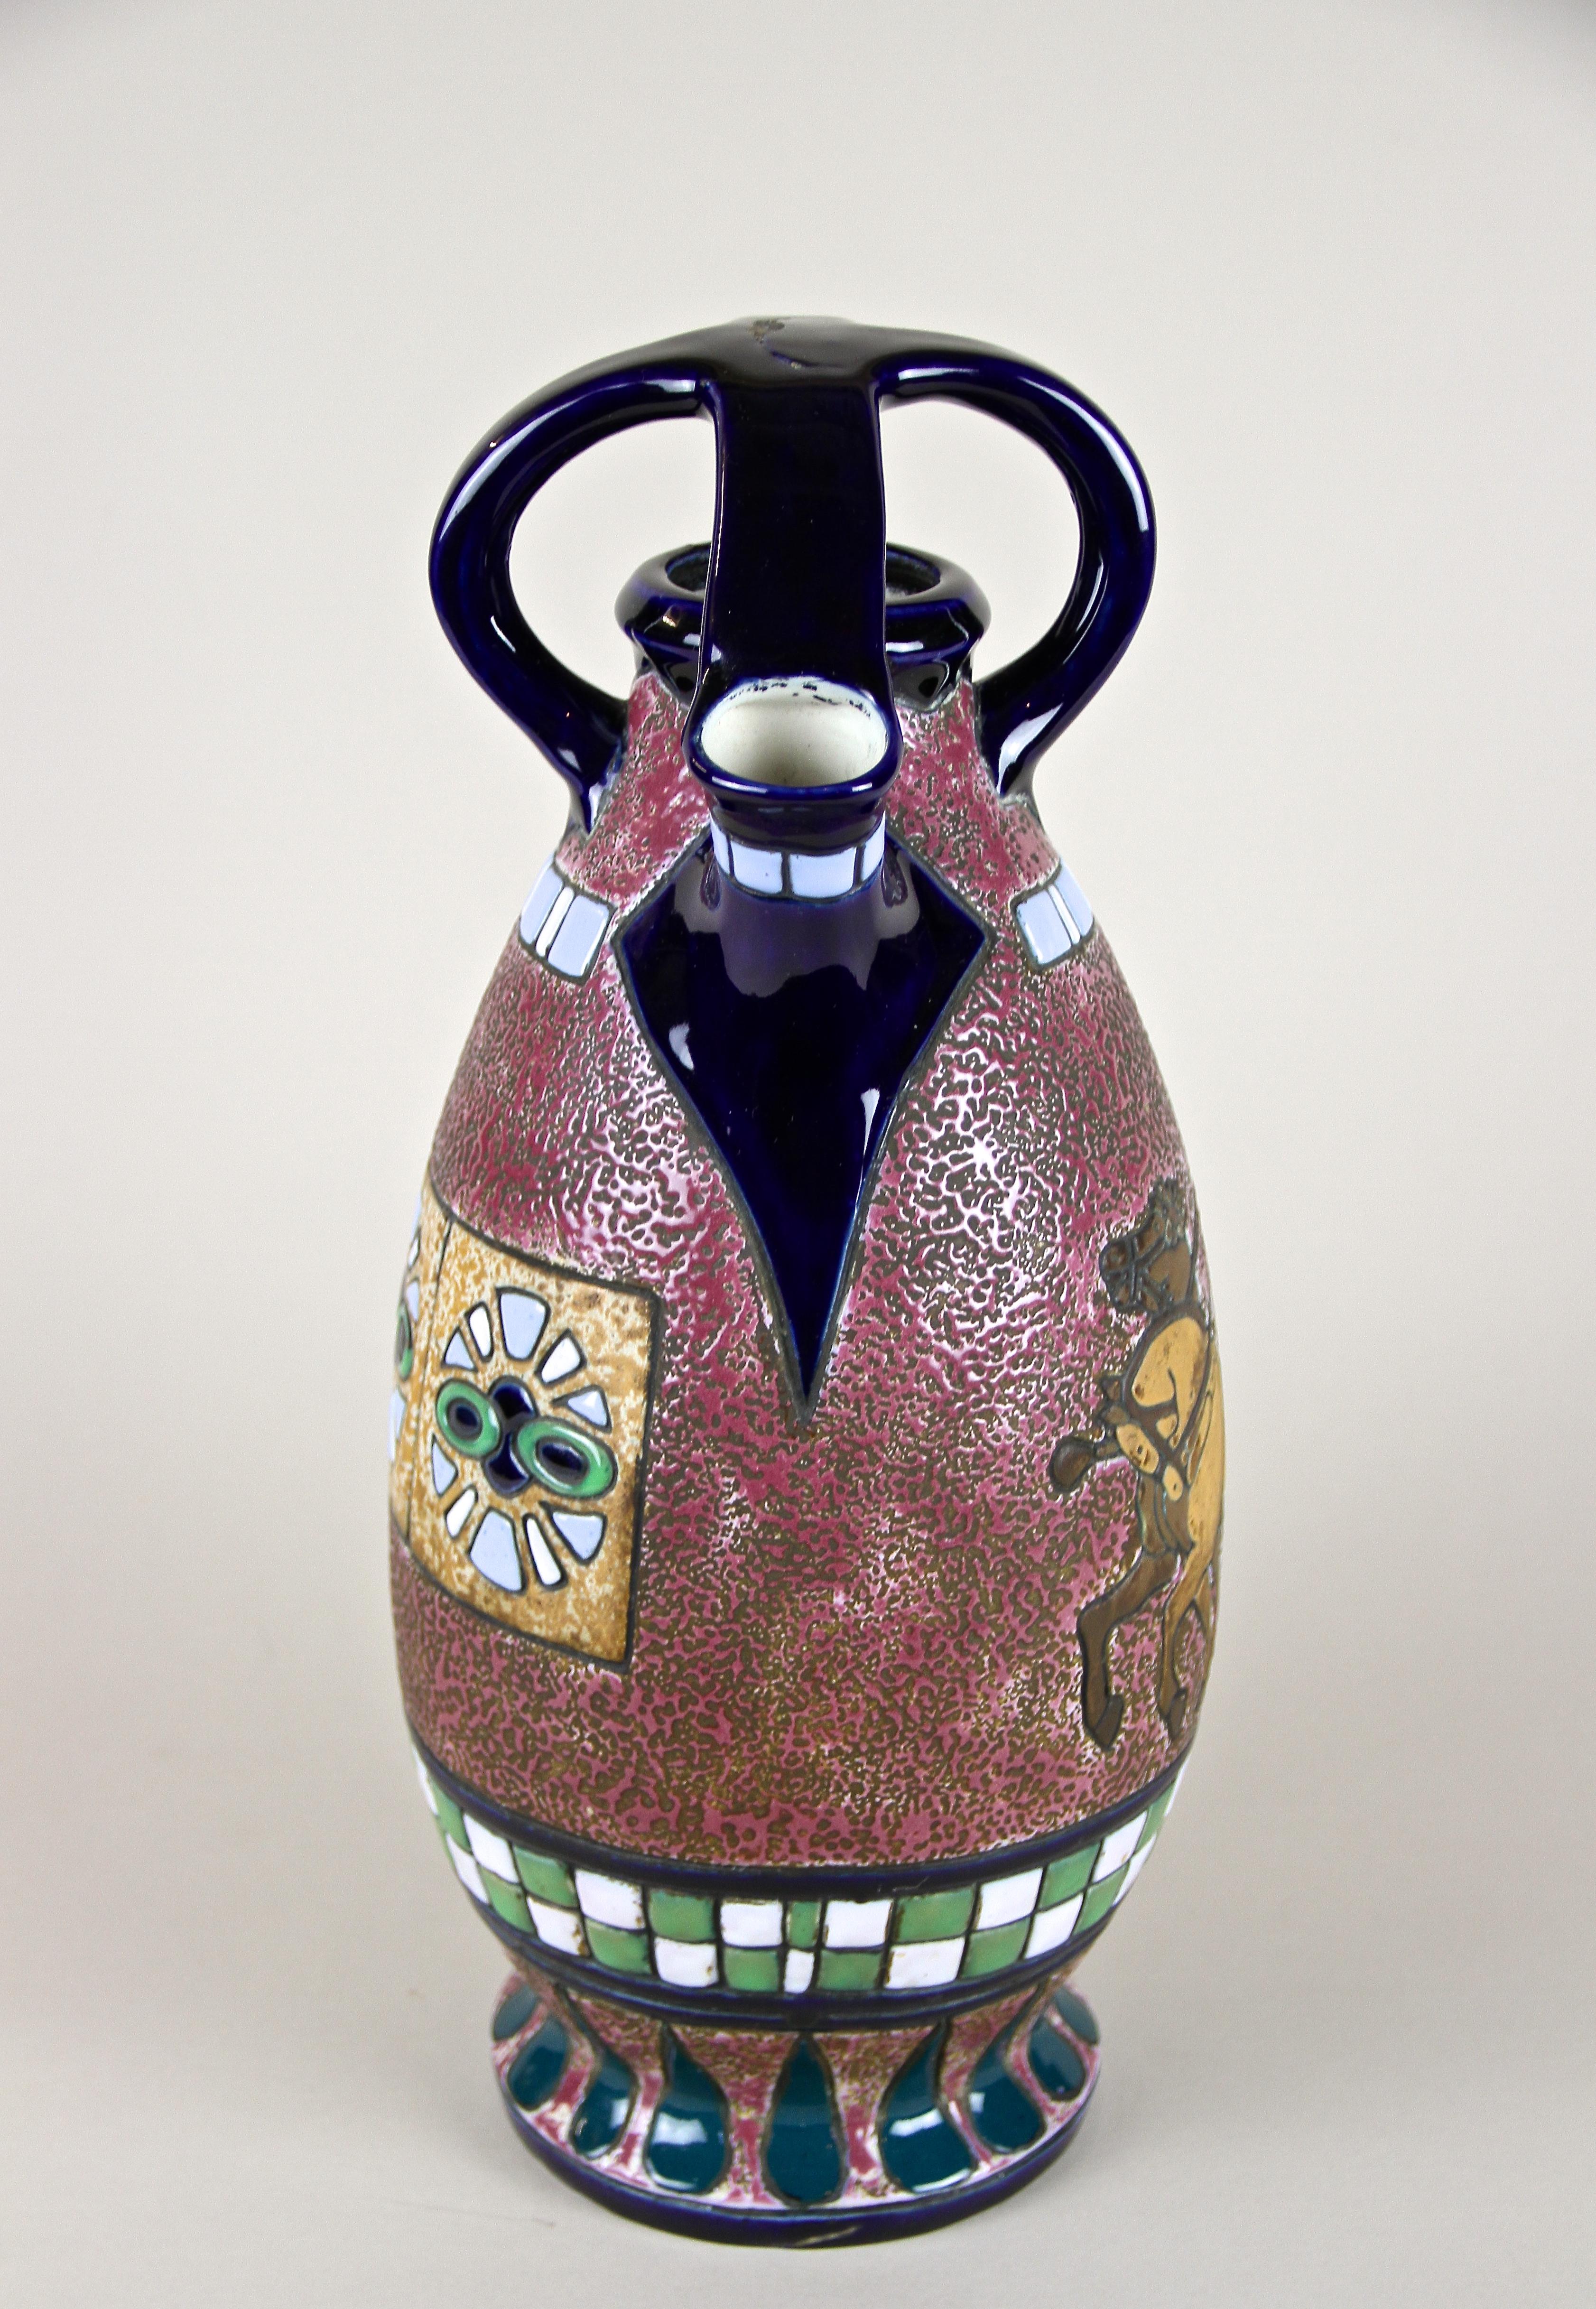 20th Century Majolica Amphora Vase Enamel Painted by Amphora CZ, Art Deco Period, circa 1920